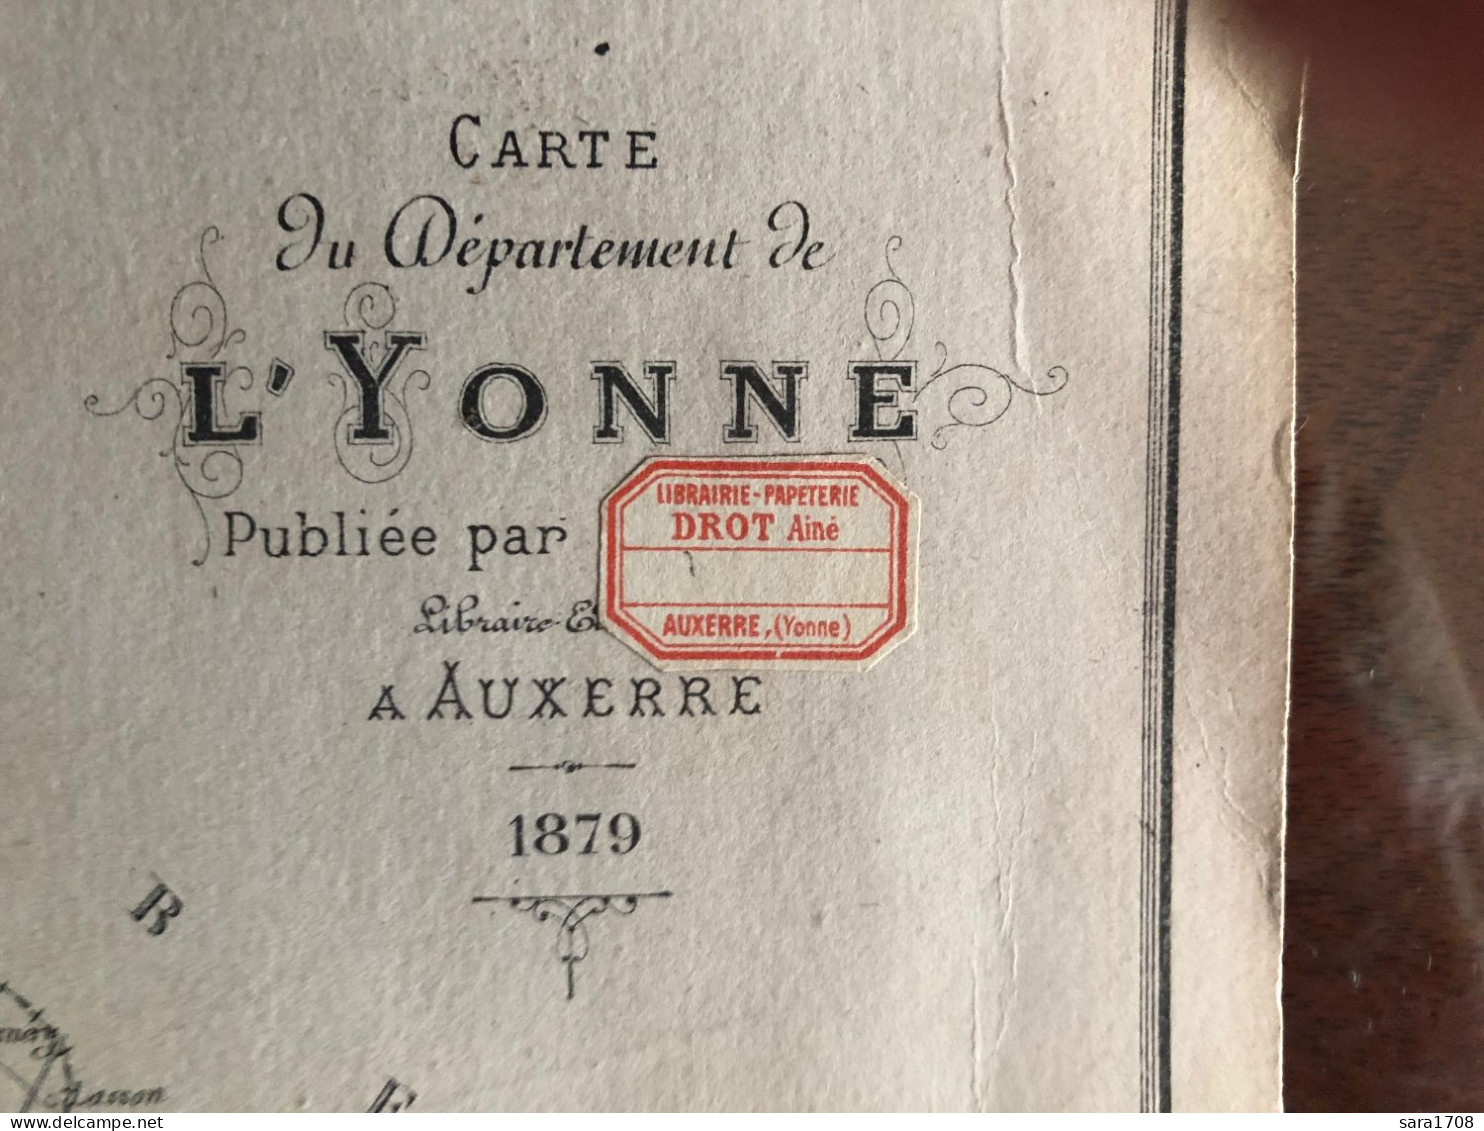 Carte Du Dép De L'YONNE, Par DROT Ainé à AUXERRE En 1879. Lithographie Par G. ROUILLE à Auxerre. PORT GRATUIT FRANCE. - Litografía